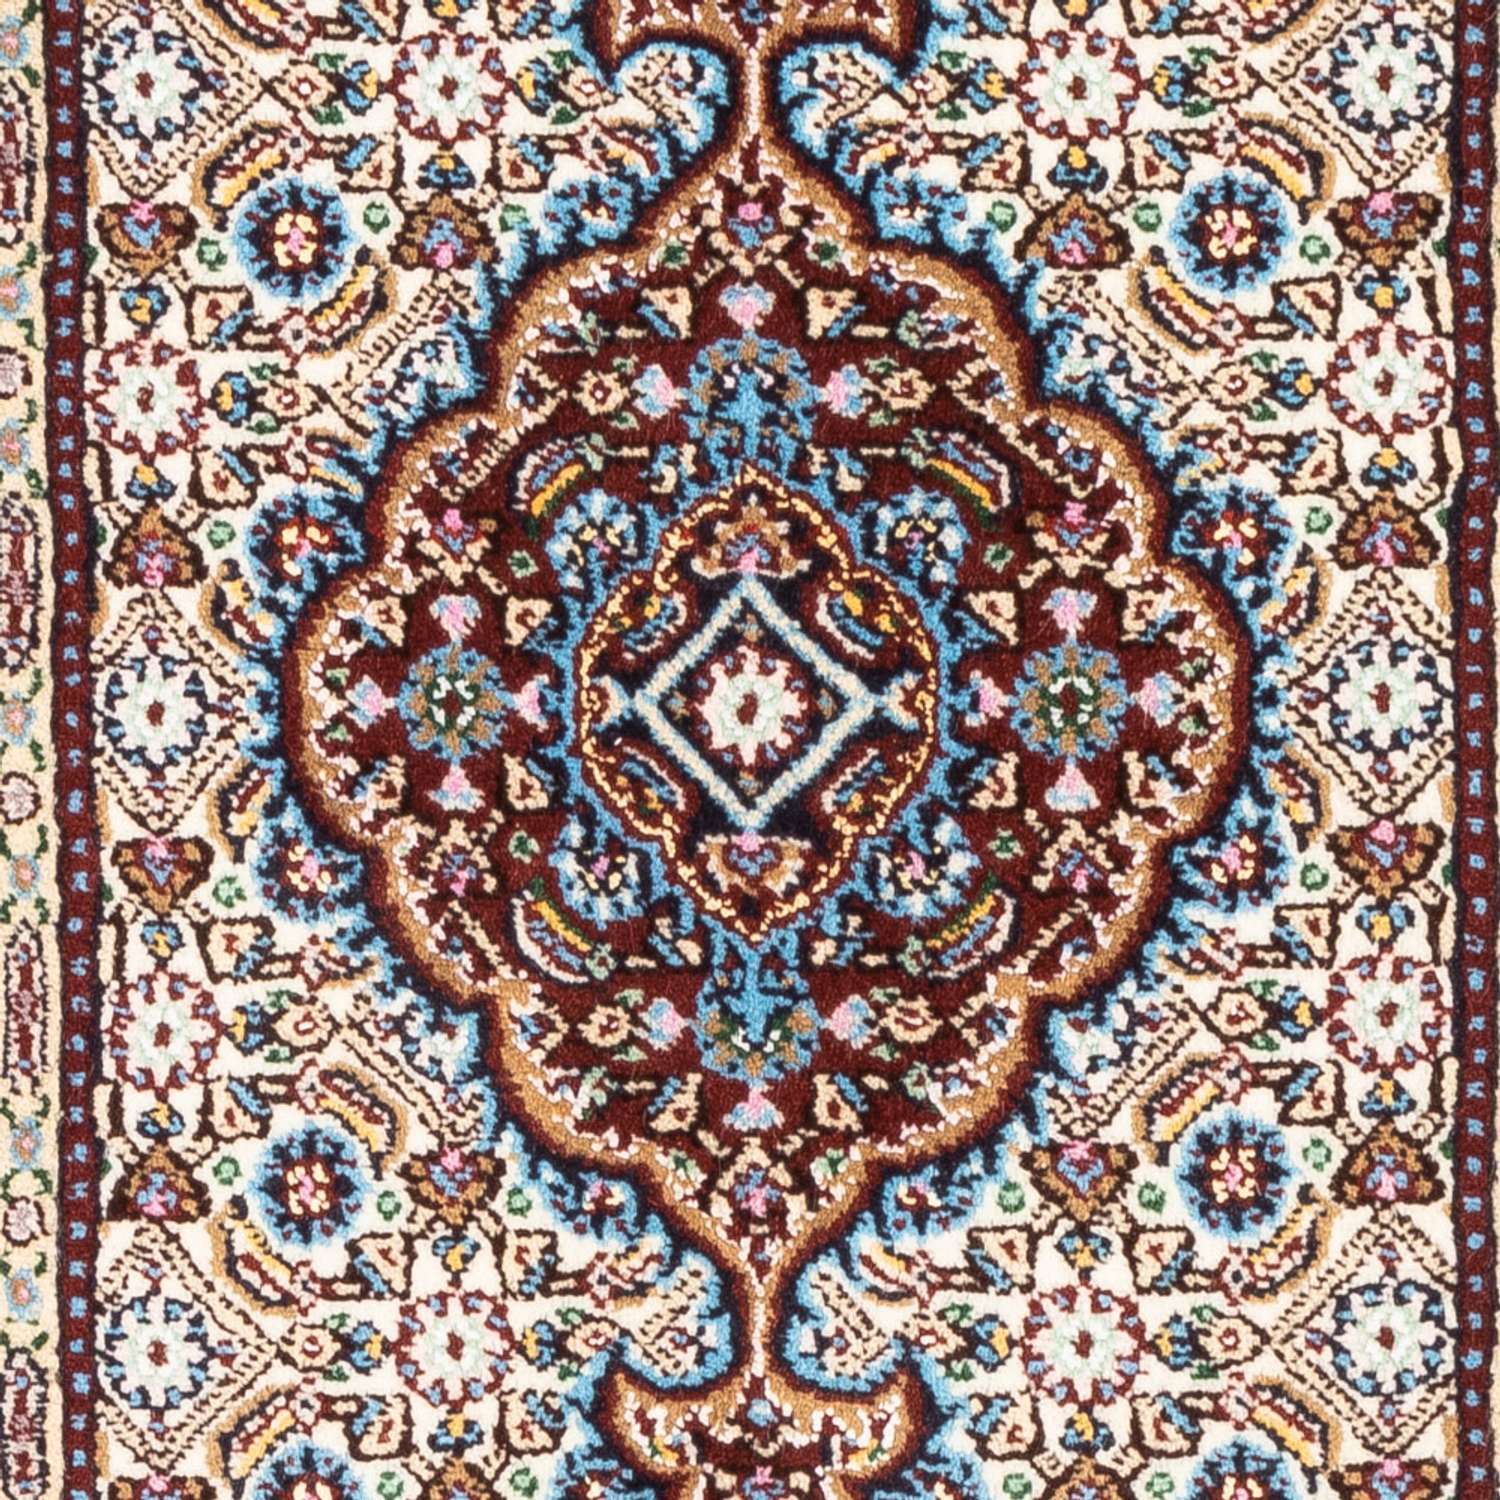 Tapis persan - Classique - Royal - 90 x 60 cm - rouge foncé